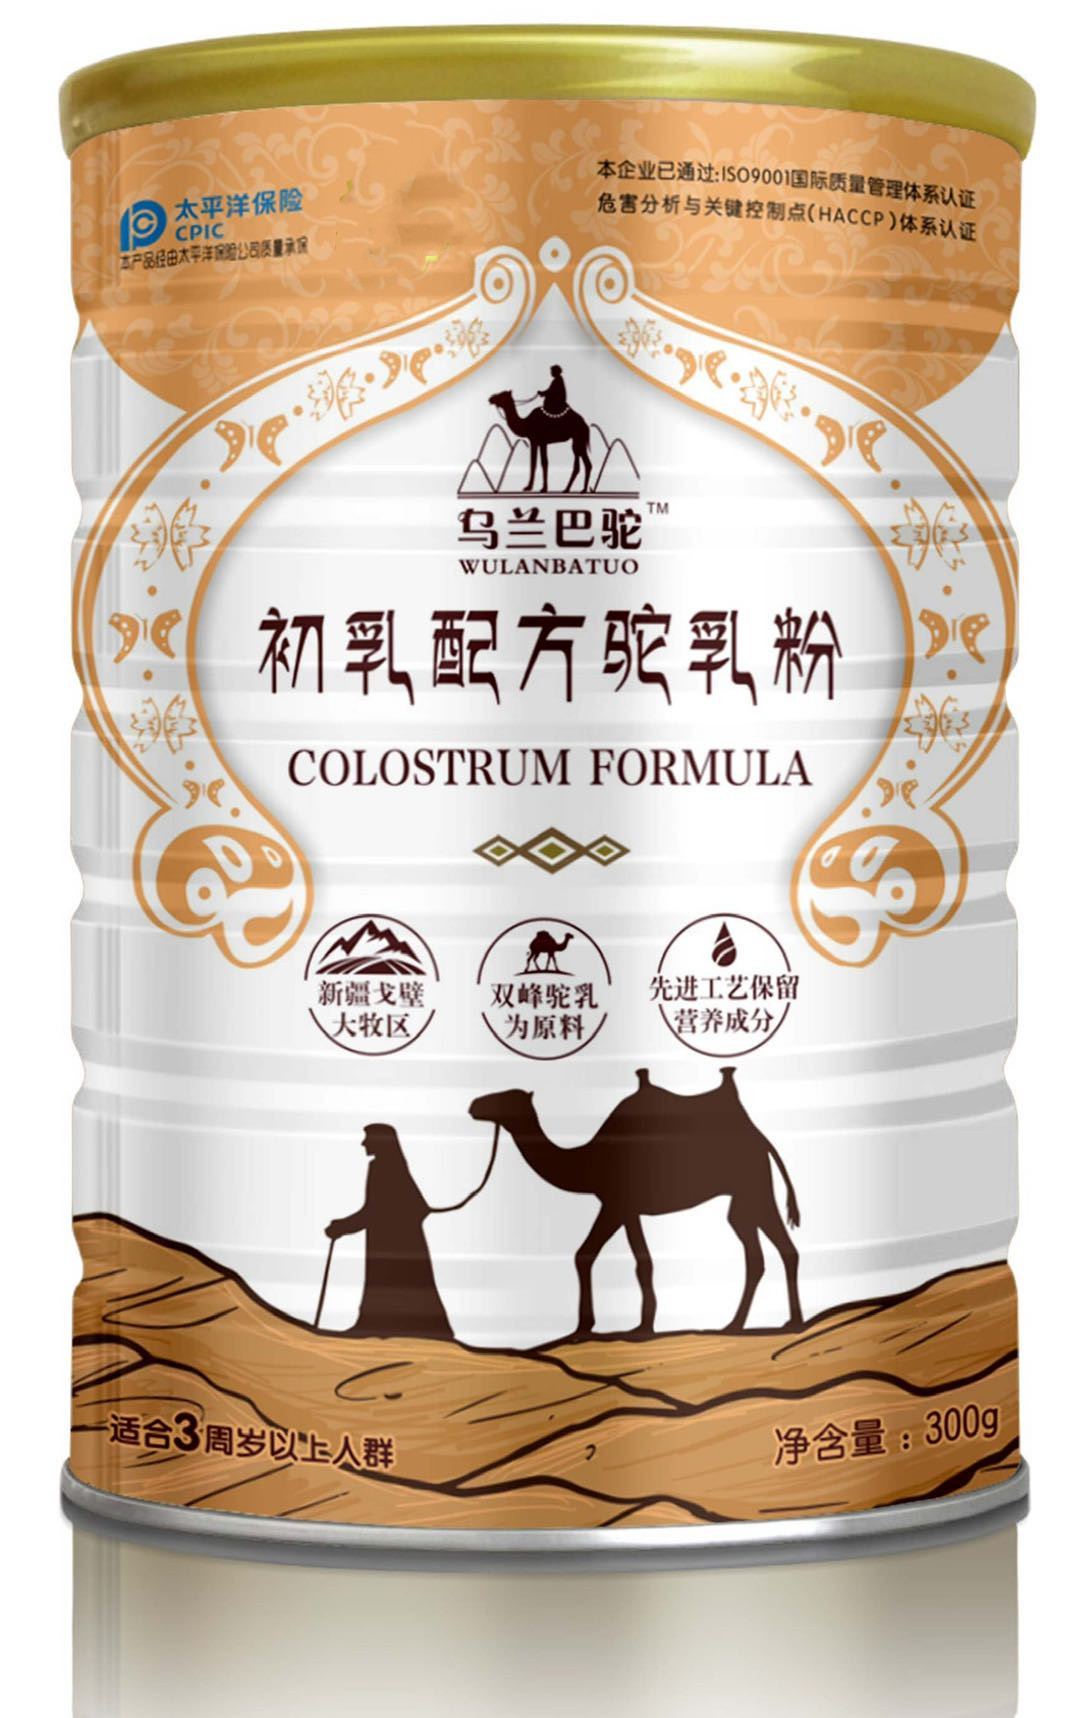 乌兰巴驼骆驼奶粉代加工厂家精心力作